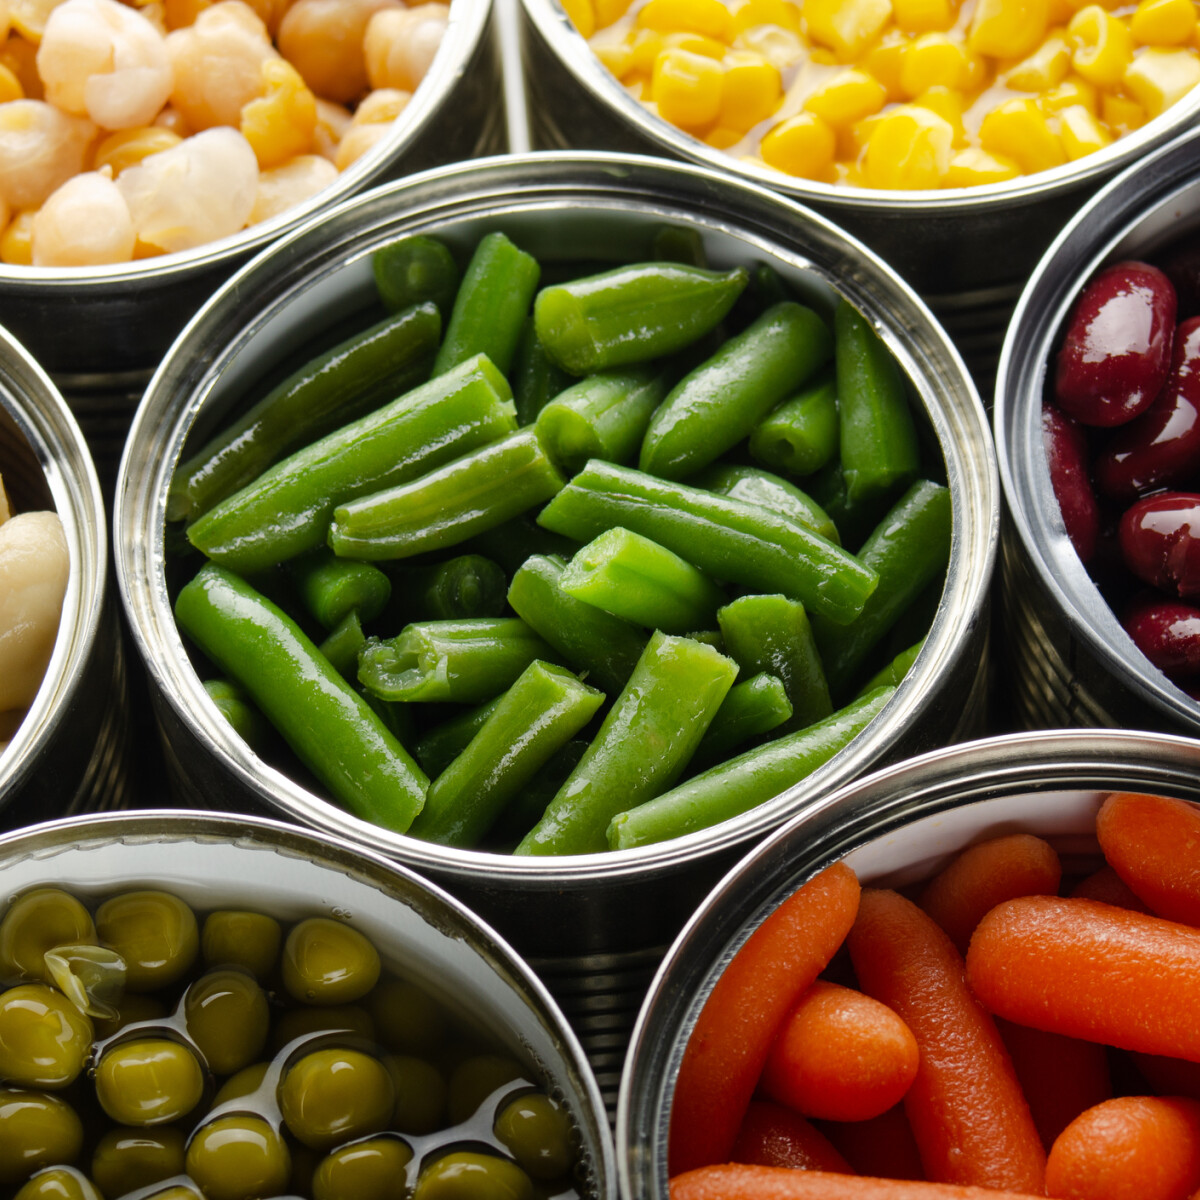 Tényleg le kell öblíteni a konzerv zöldséget fogyasztás előtt?